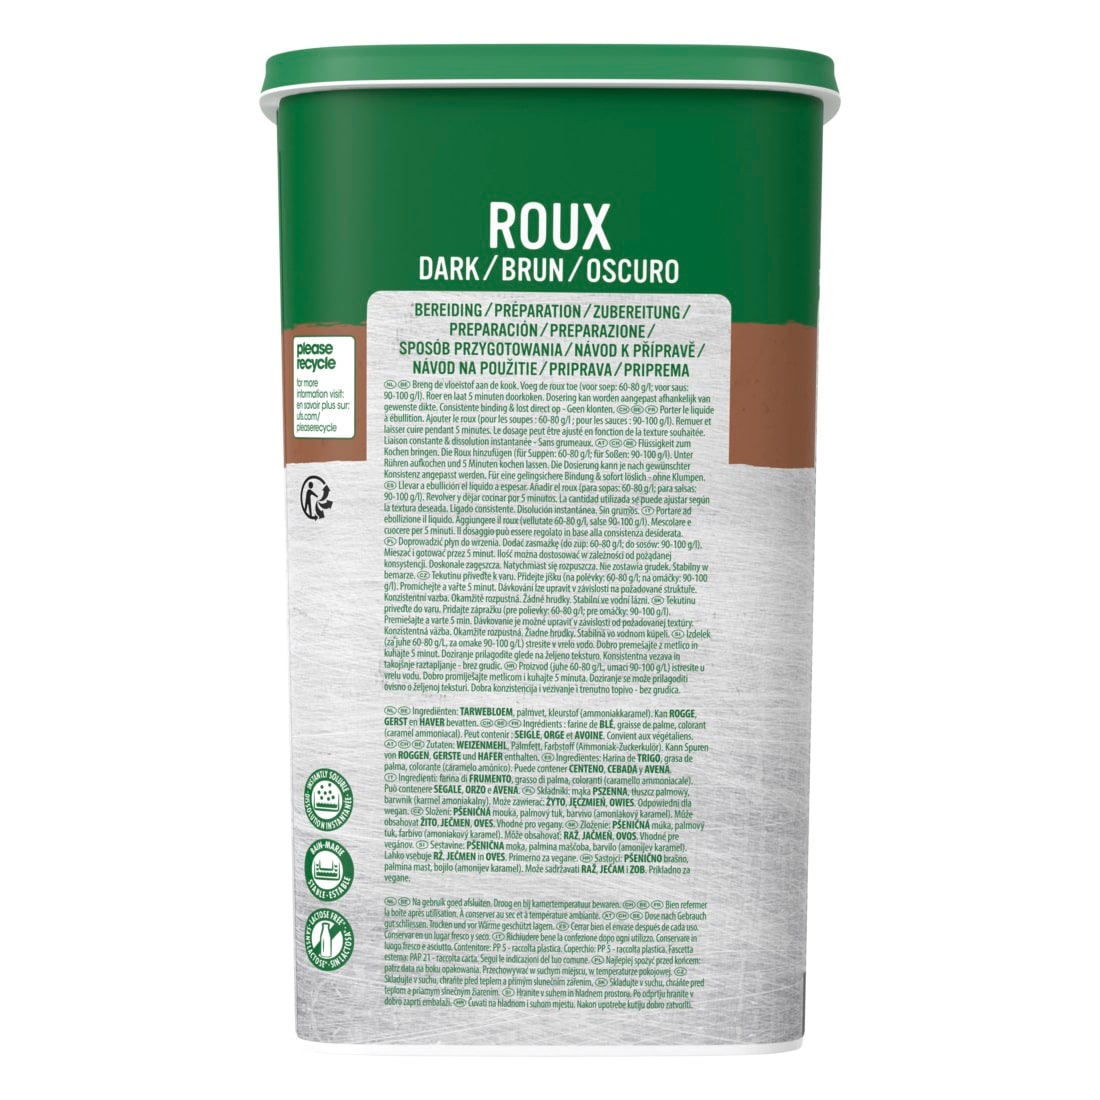 Knorr Roux Bruno istantaneo granulare 1 Kg - Il Roux è una base legante indispensabile per la preparazione di tutte le tue salse in cucina